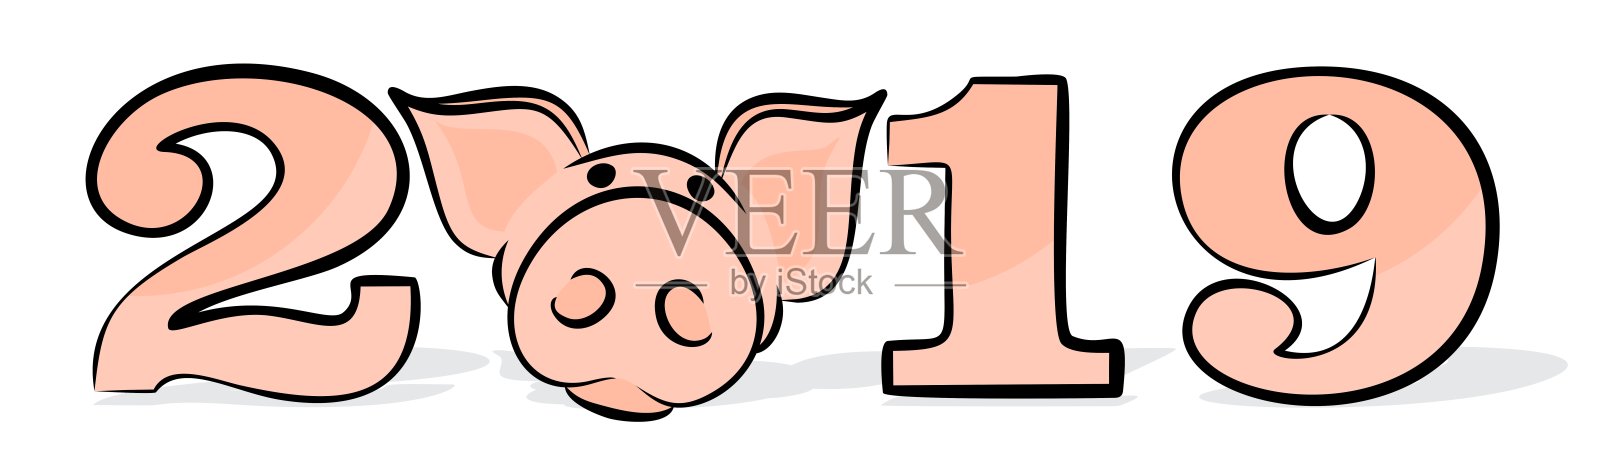 贺年卡与猪。插画图片素材